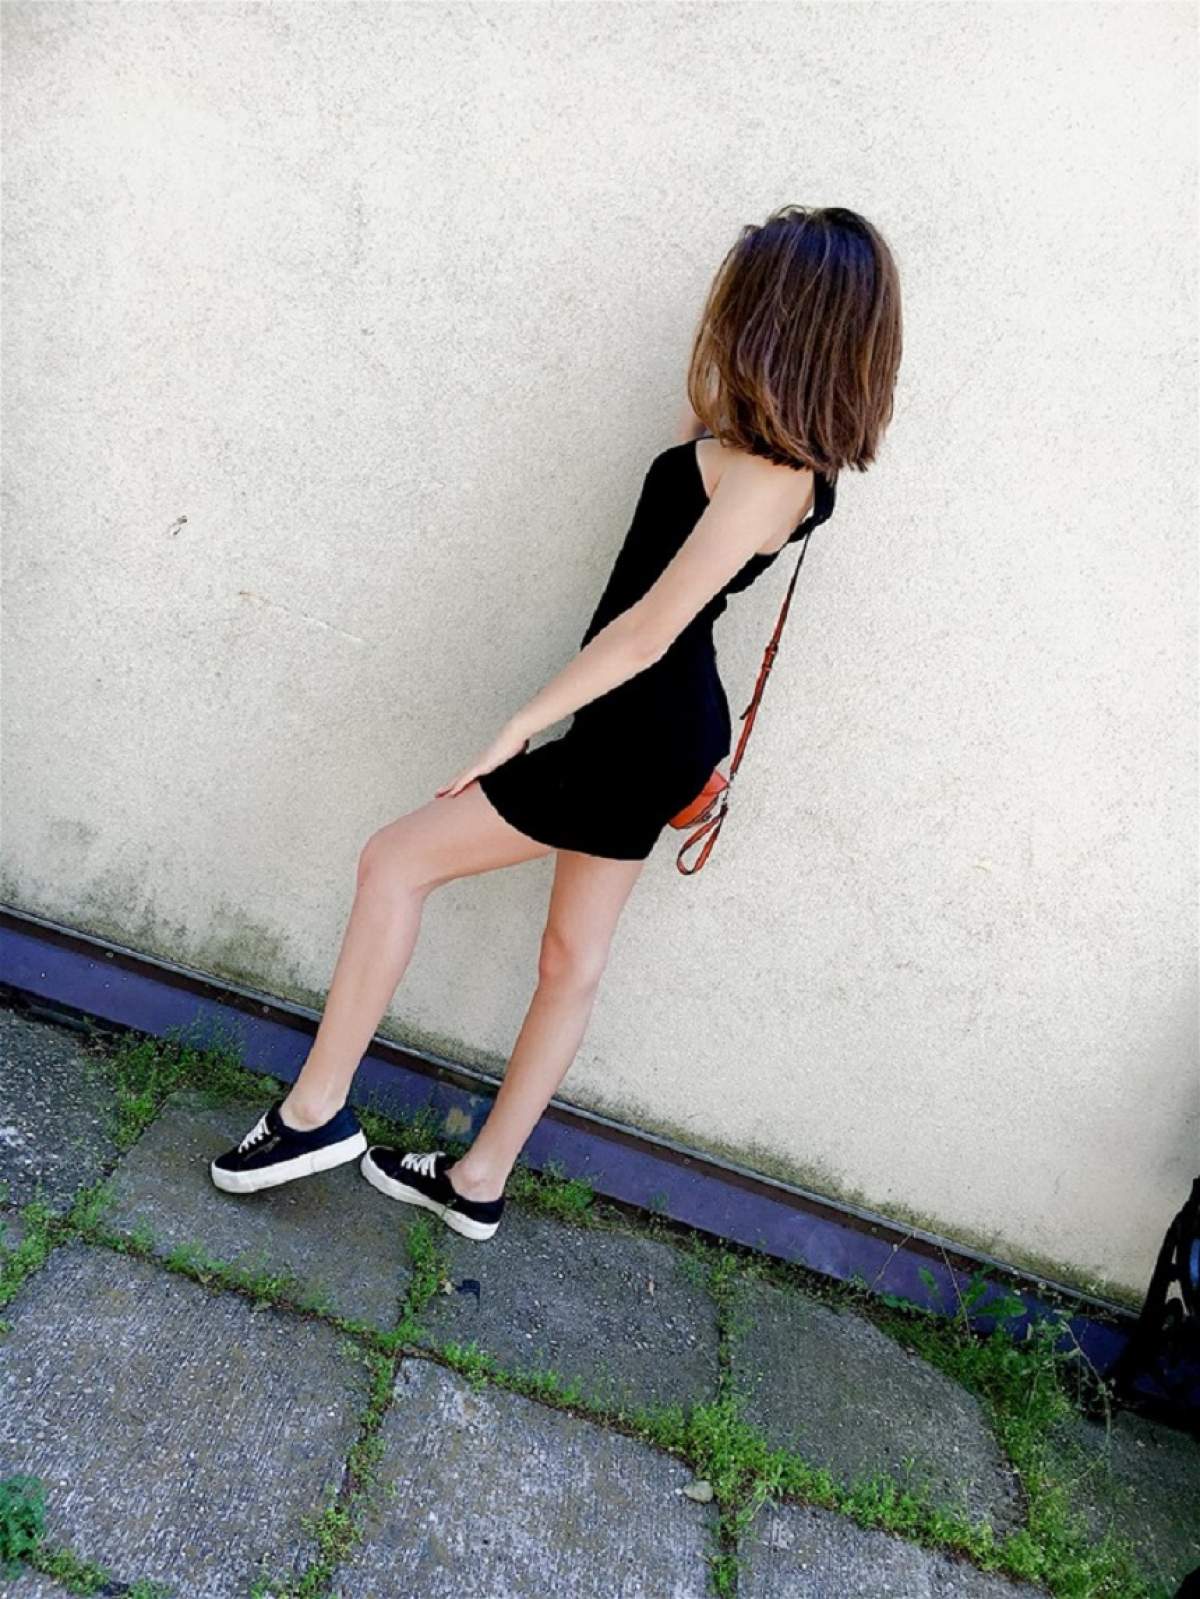 FOTO / Ce face Ioana, fiica lui Cristi Boureanu, după ce au apărut fotografii cu ea goală!